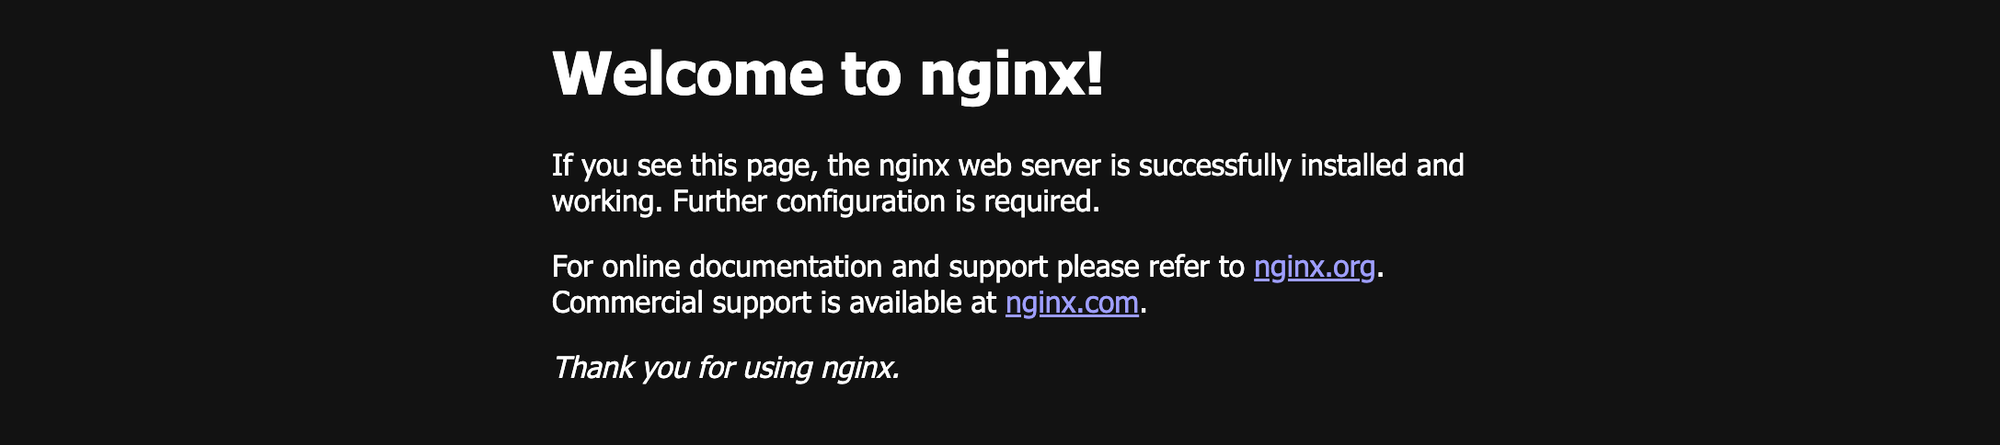  Nginx 실행 후 확인할 �수 있는 페이지